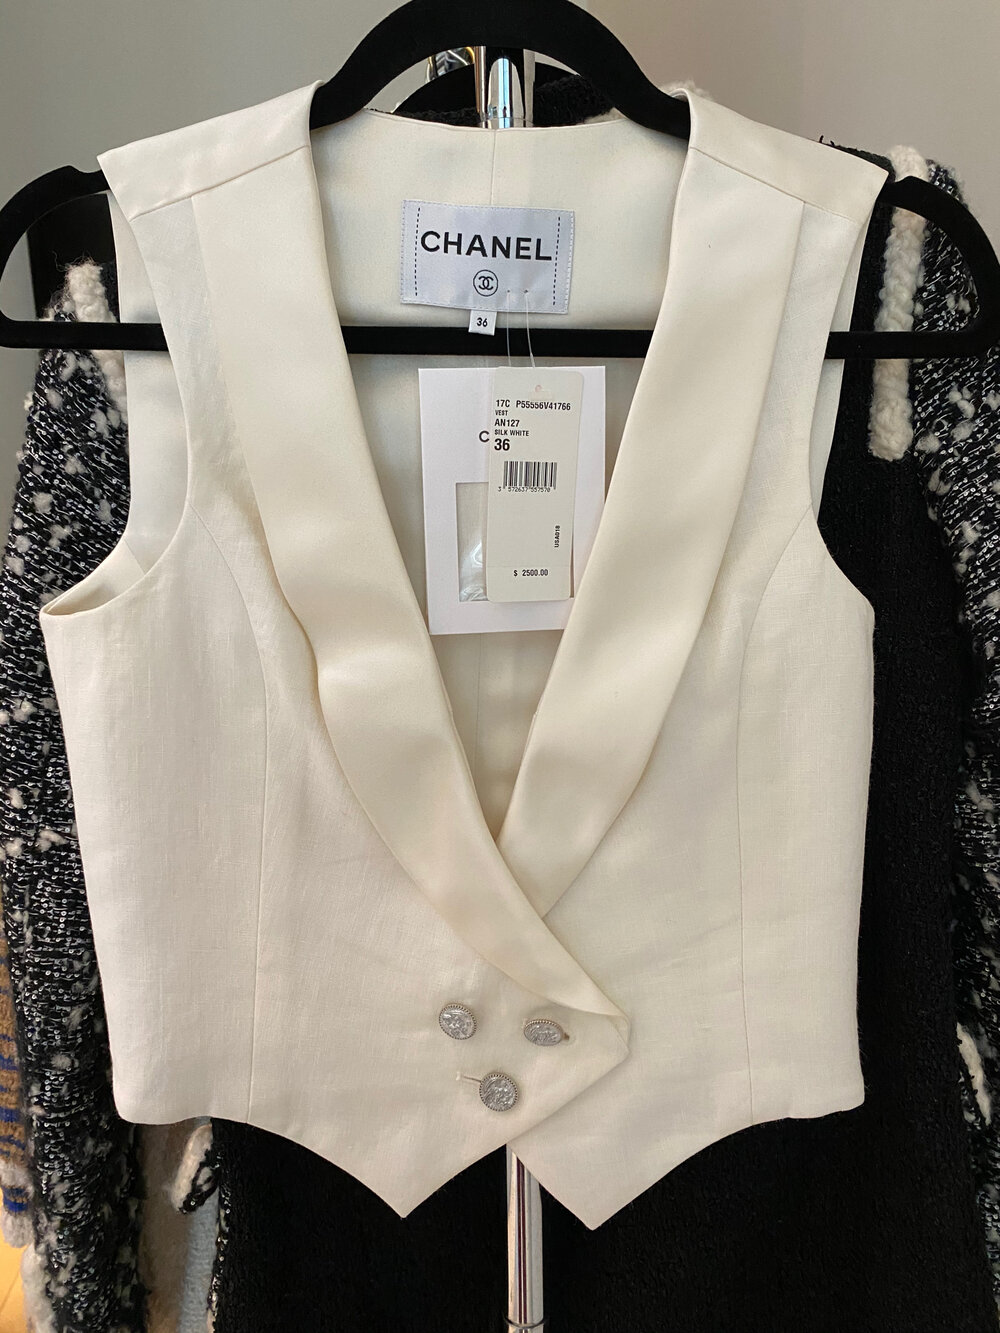 Chanel Resort 2017 Paris-Cuba White Vest — The Posh Pop-Up